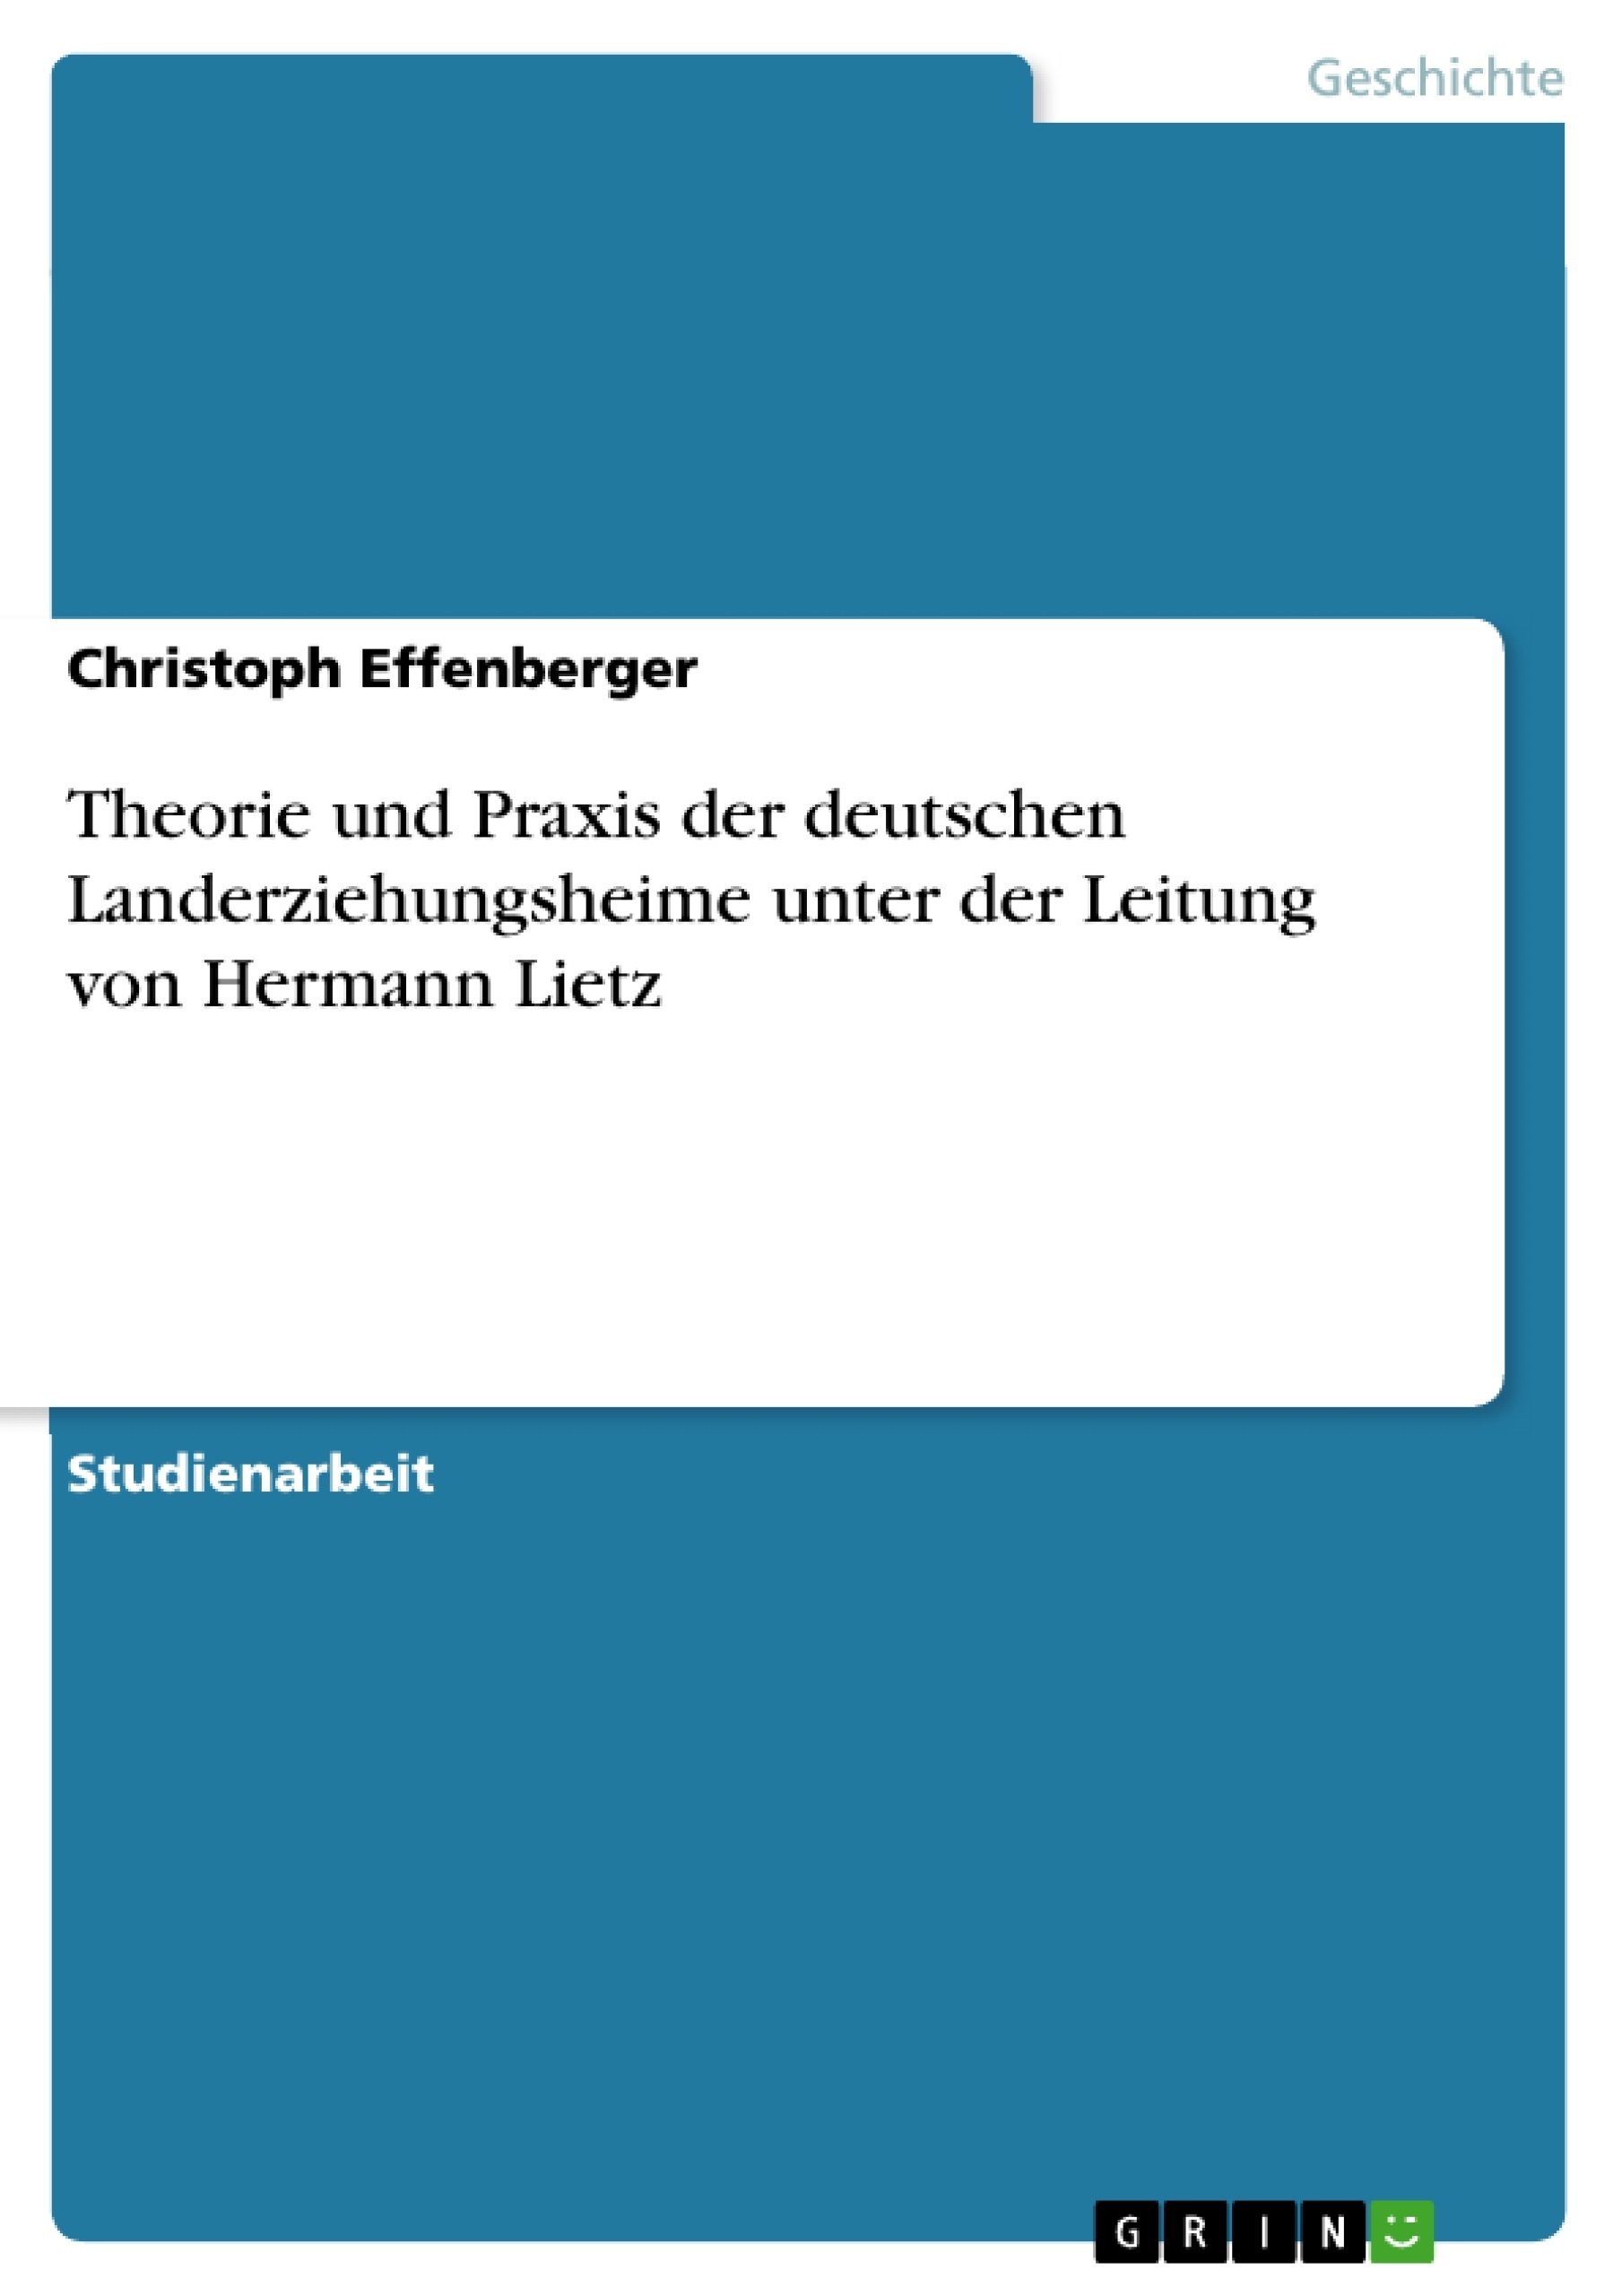 Title: Theorie und Praxis der deutschen Landerziehungsheime unter der Leitung von Hermann Lietz